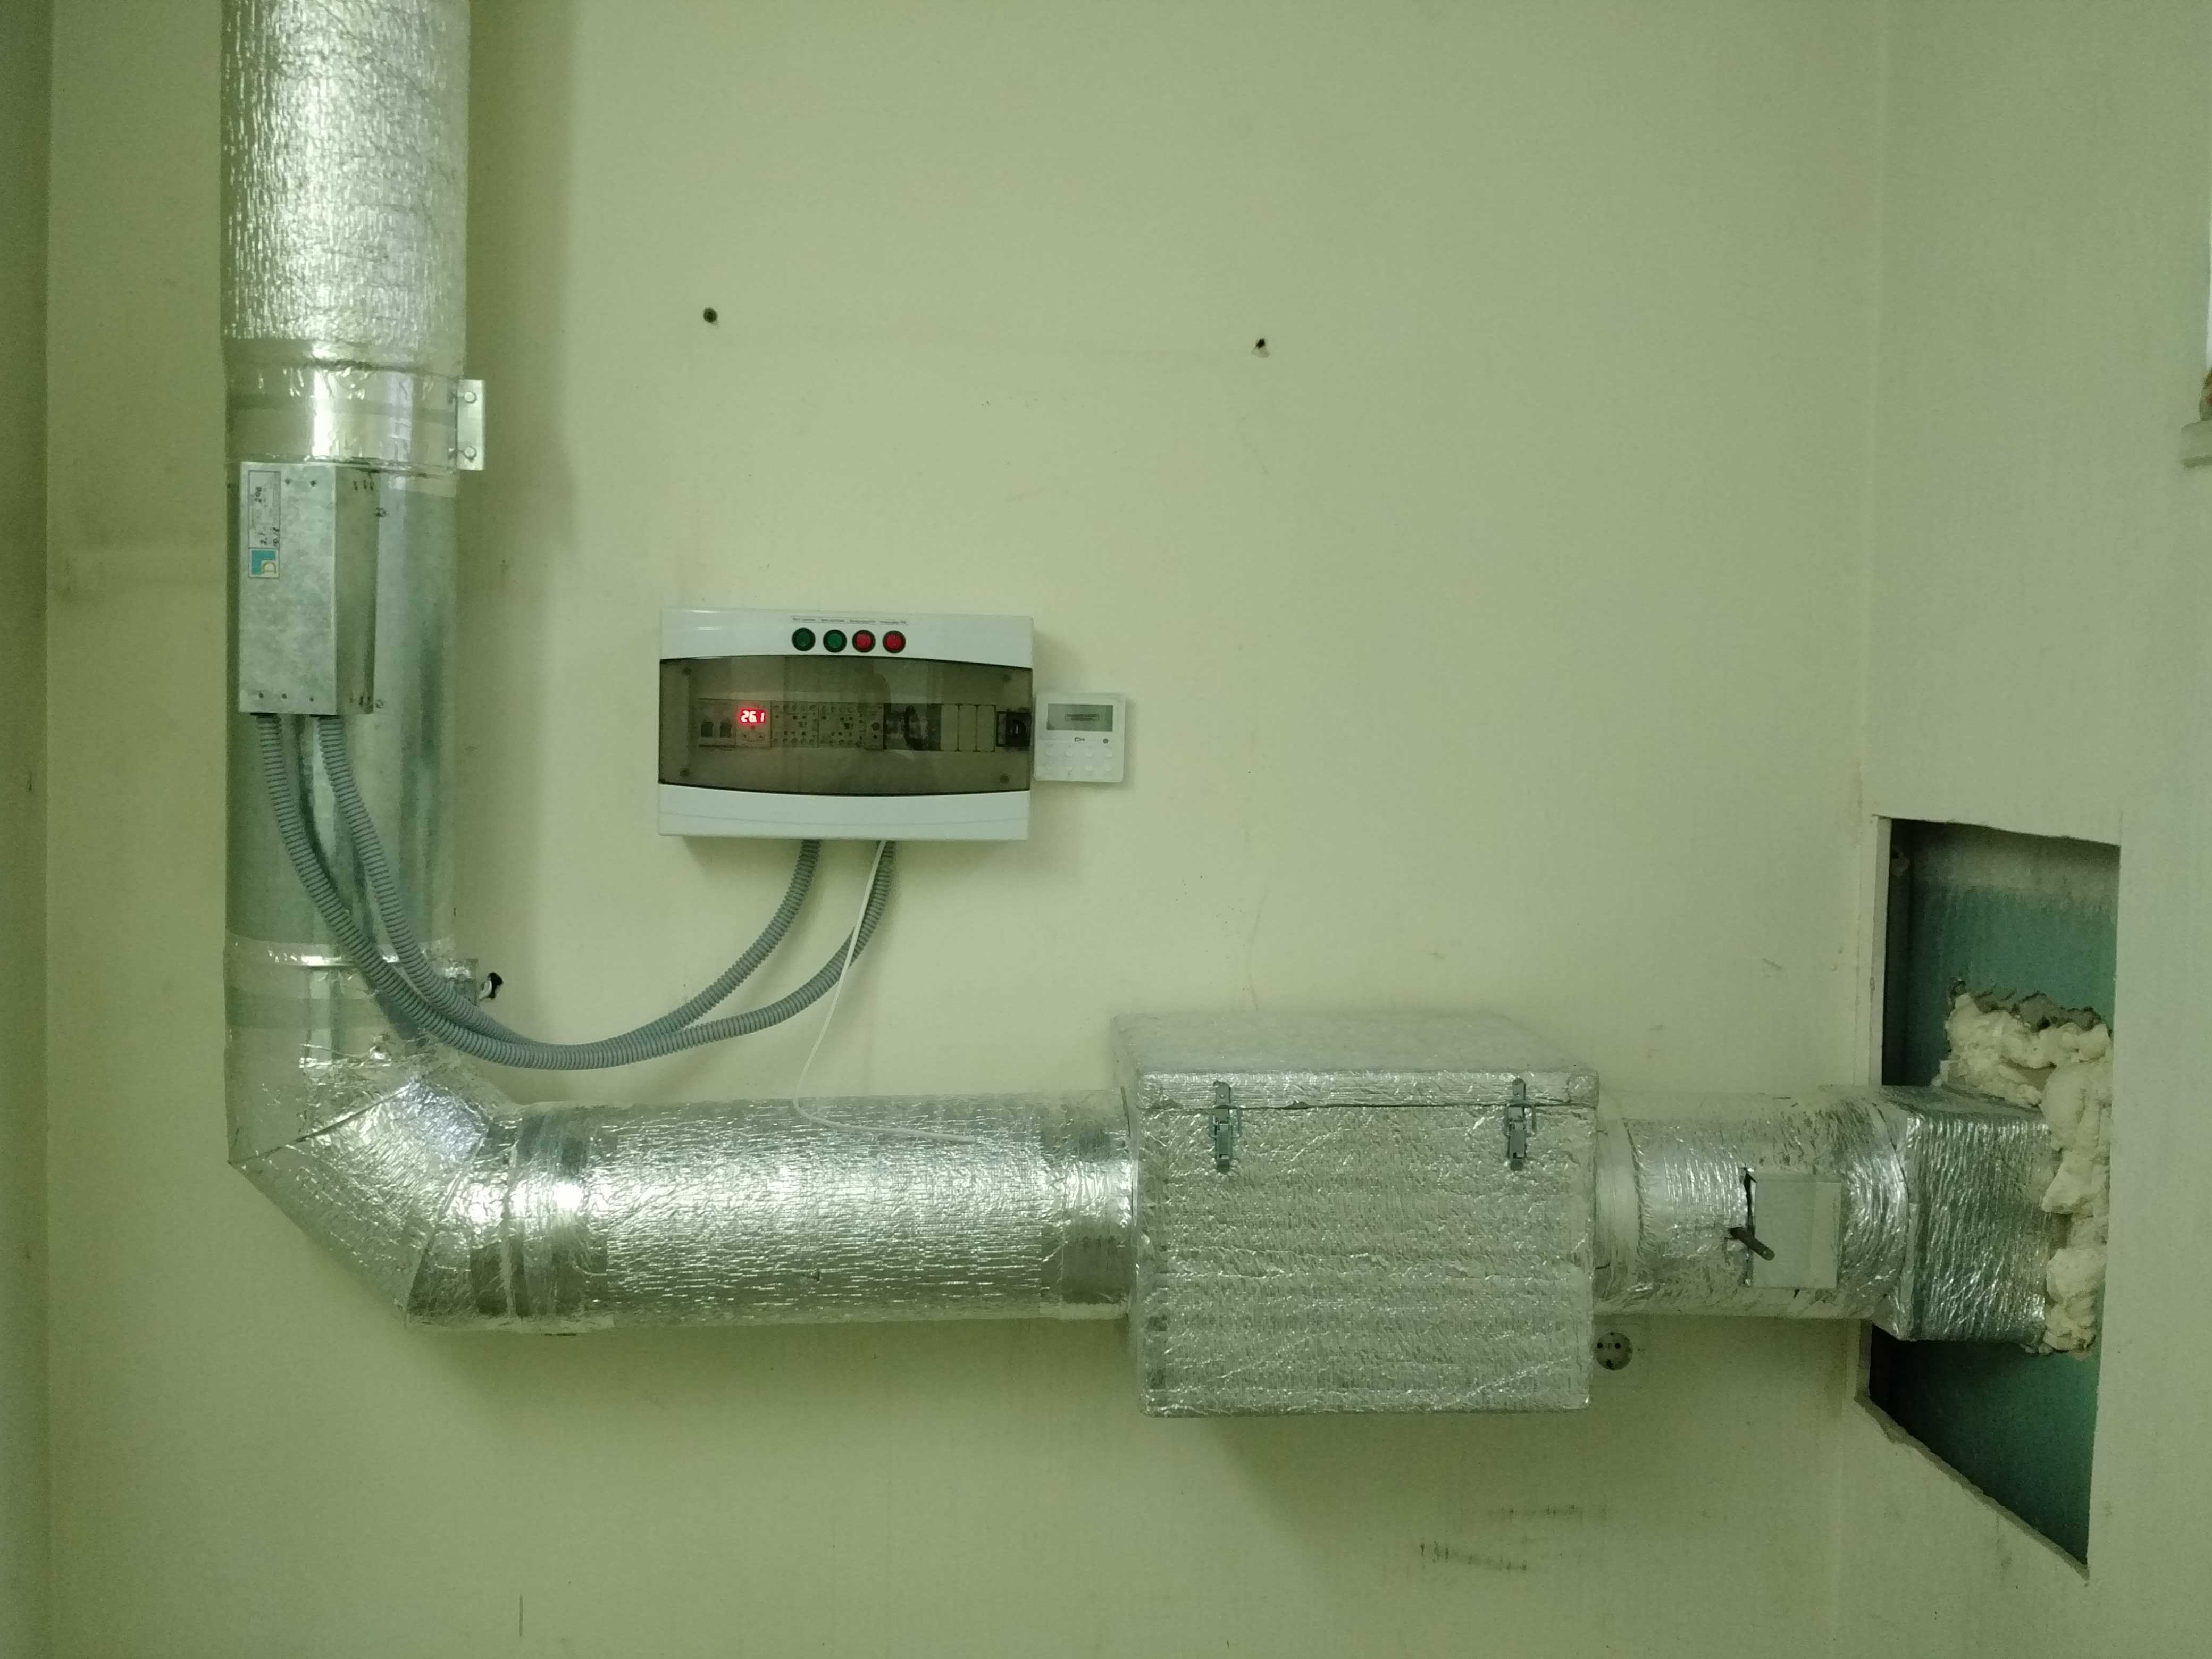 Вентиляция с обогревом. Нагреватель воздуха для приточной вентиляции водяной. Система подогрева воздуха в приточной вентиляции. Приточка с подогревом 315. Электро подогрев вентиляции воздуха в приточной вентиляции.